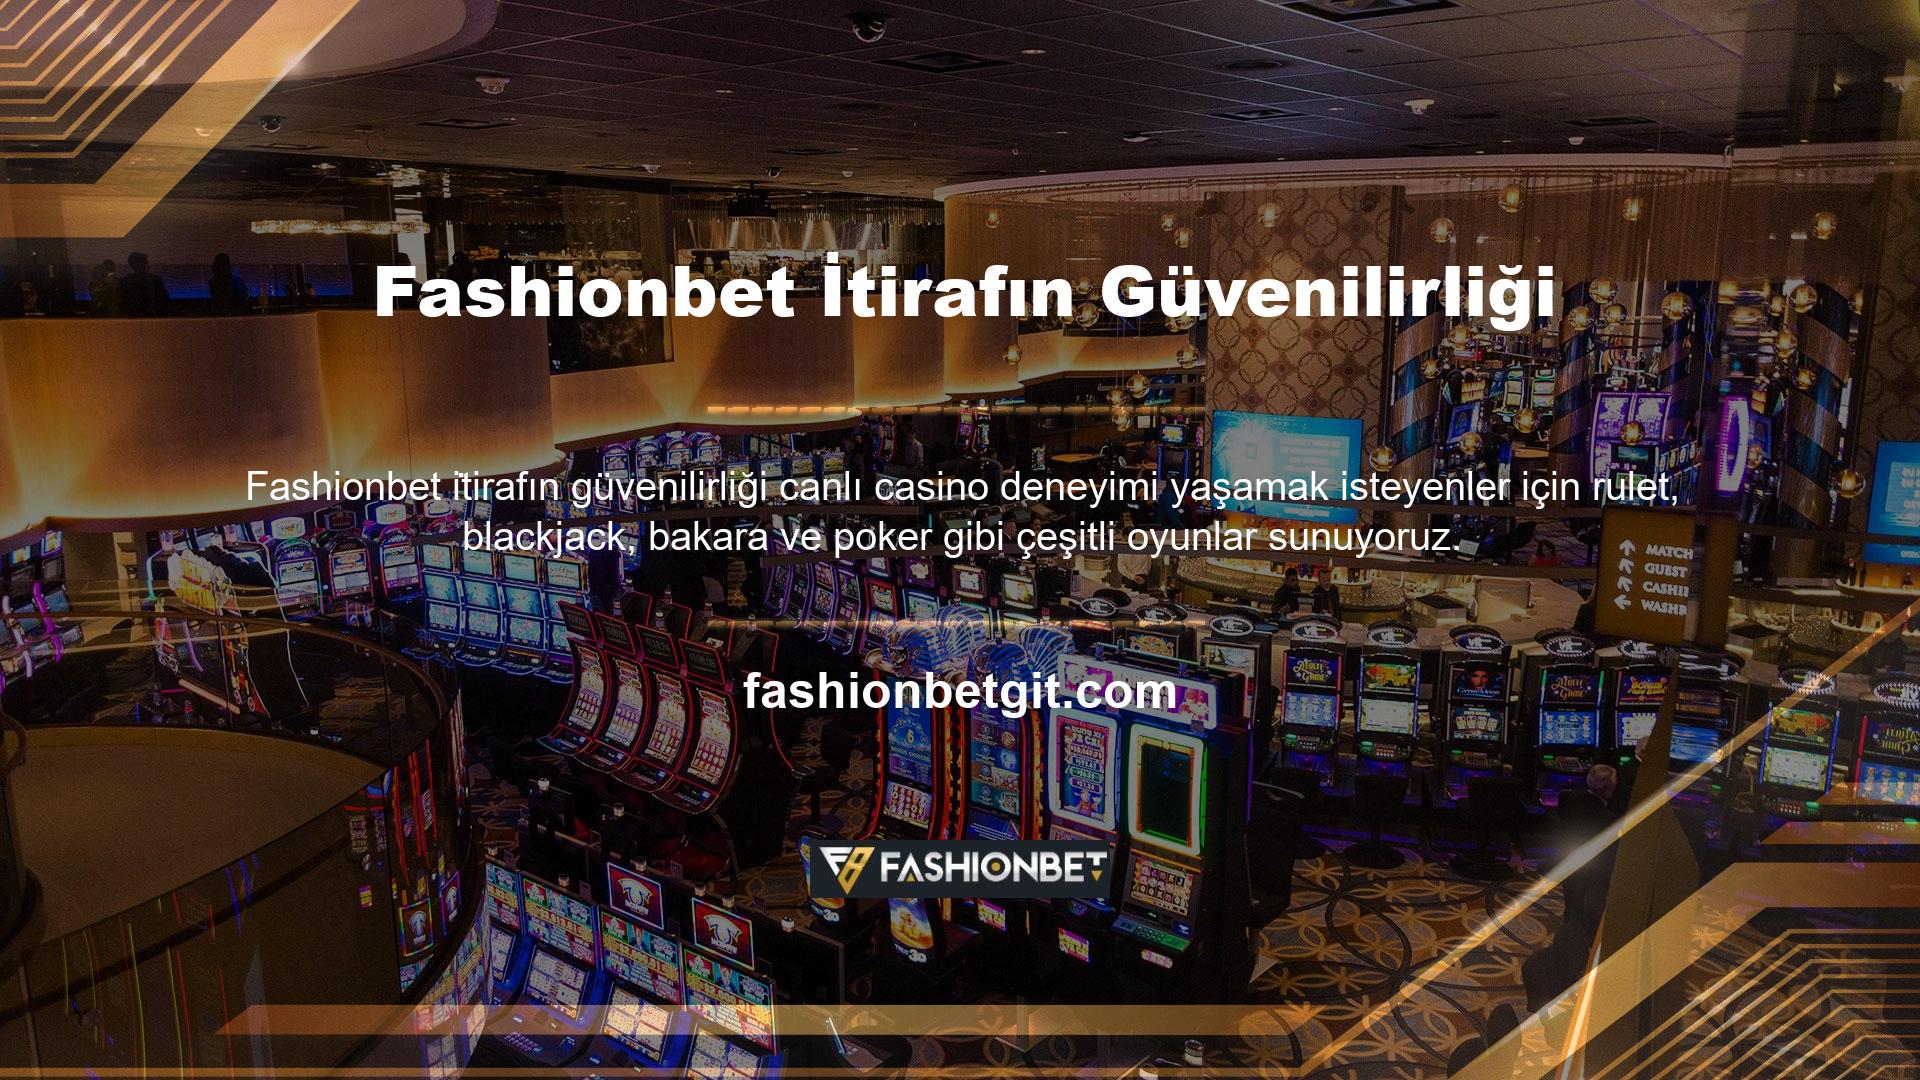 Fashionbet bahis siteleri uzun süredir online bahis sektöründe yer almakta ve oyuncuların para kazanmasına olanak sağlamaktadır